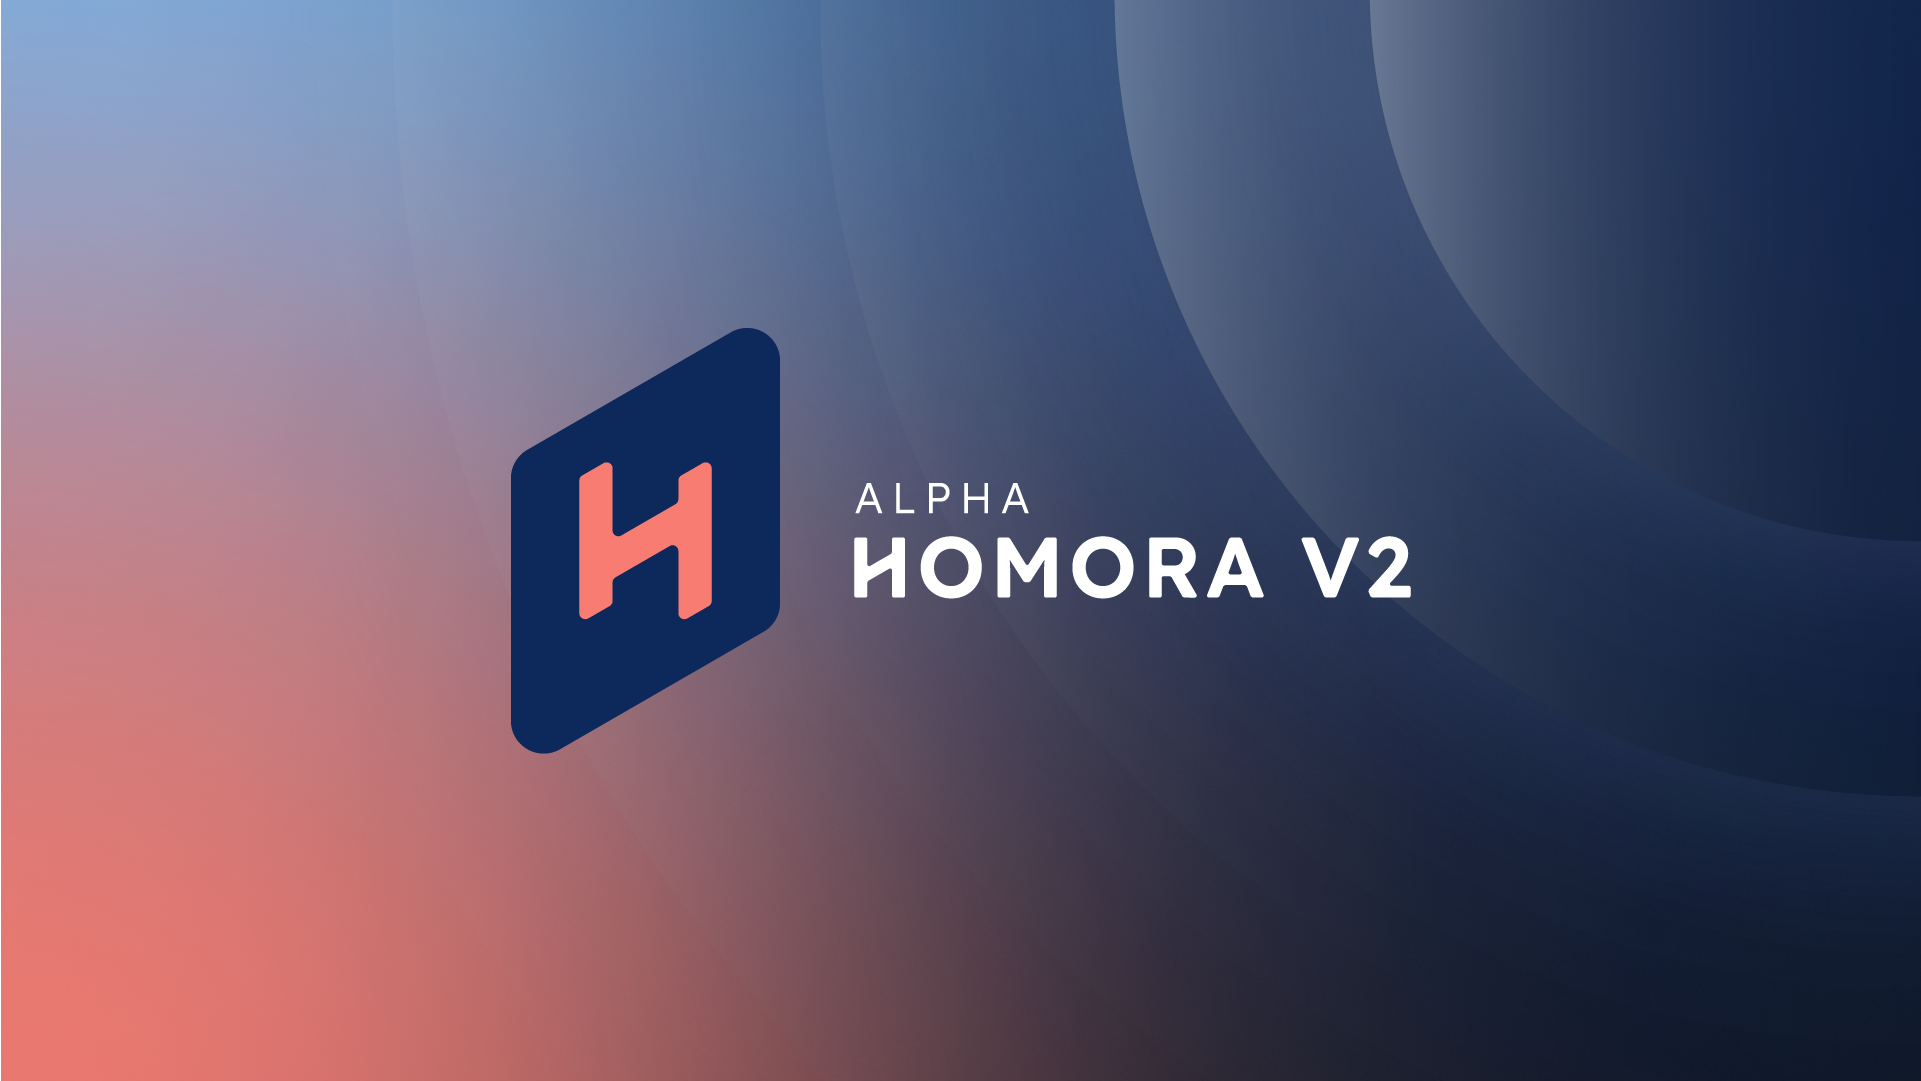 ¿Qué es Homora V2?